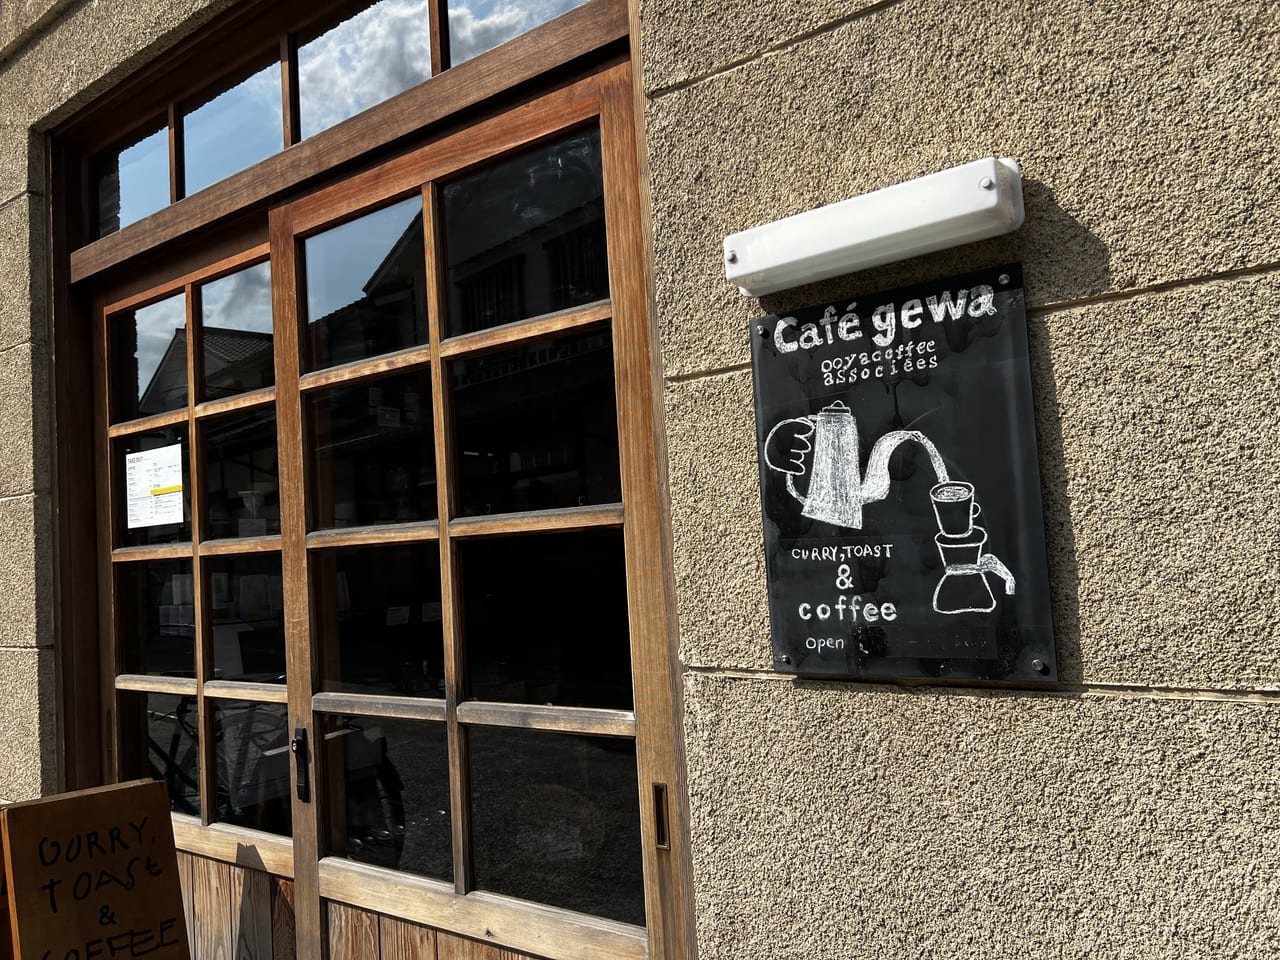 Cafe gewa